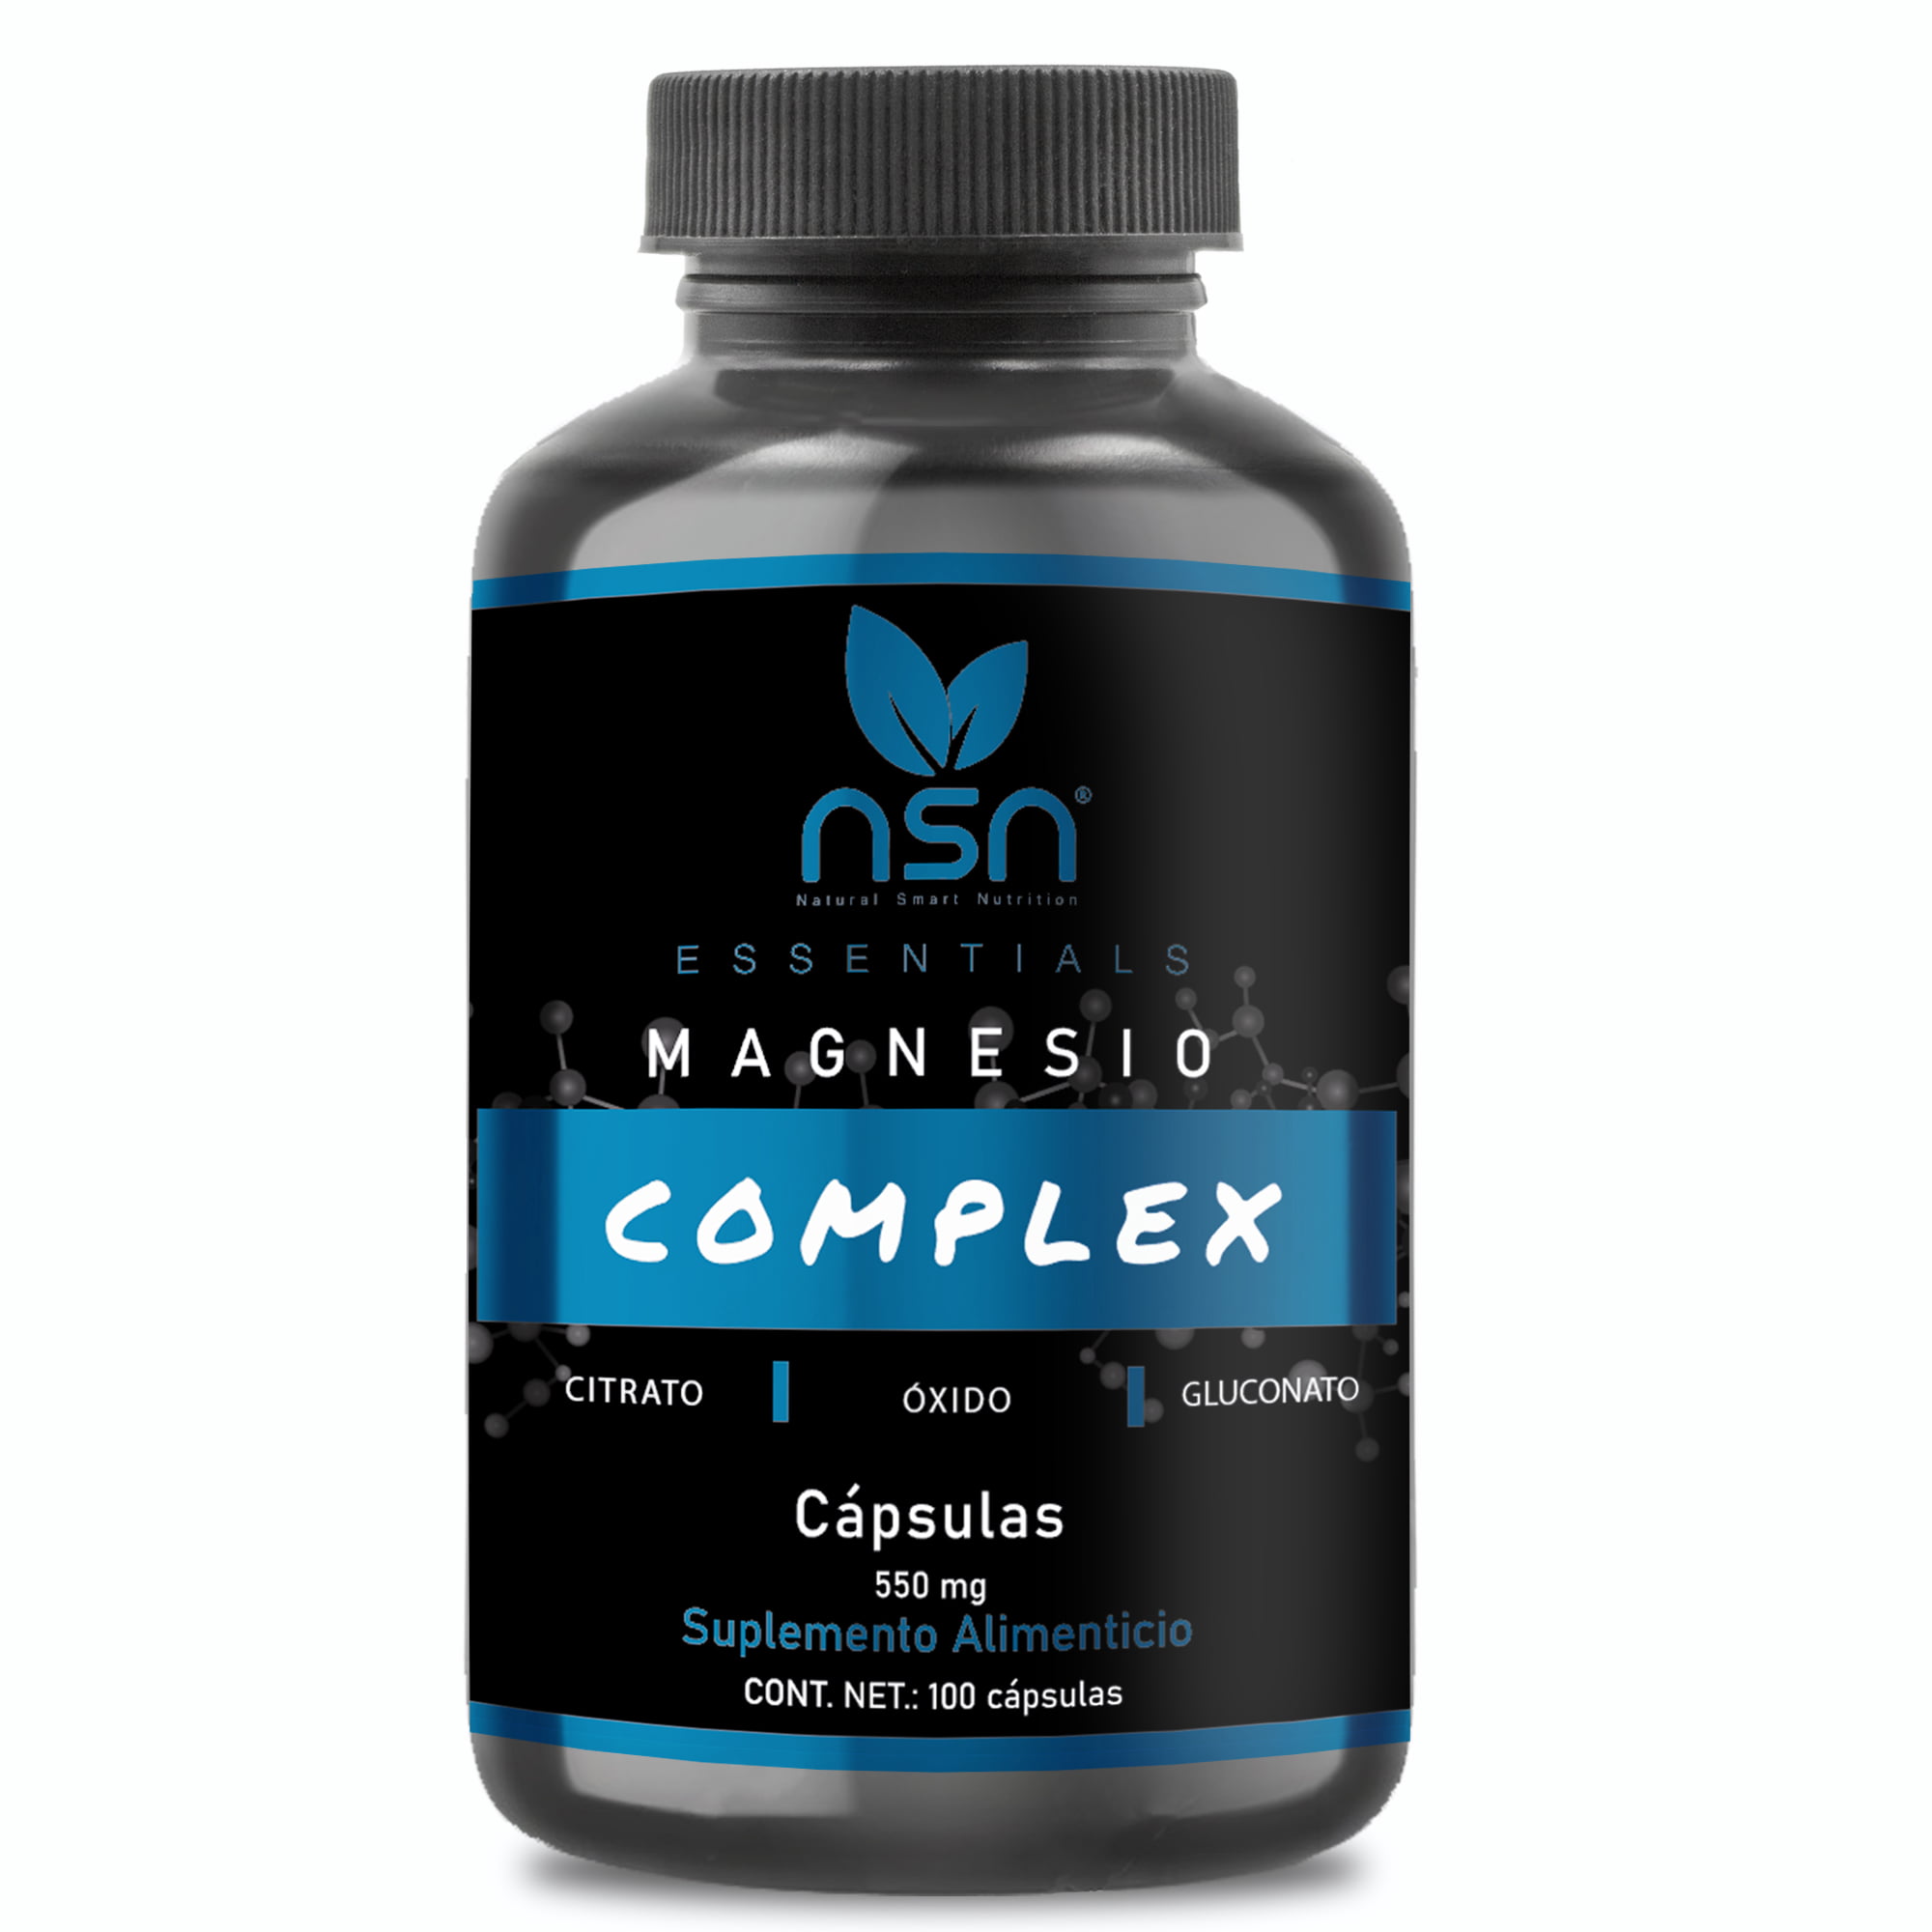 Magnesio complex | gluconato, citrato y oxido natural smartnutrition essentials